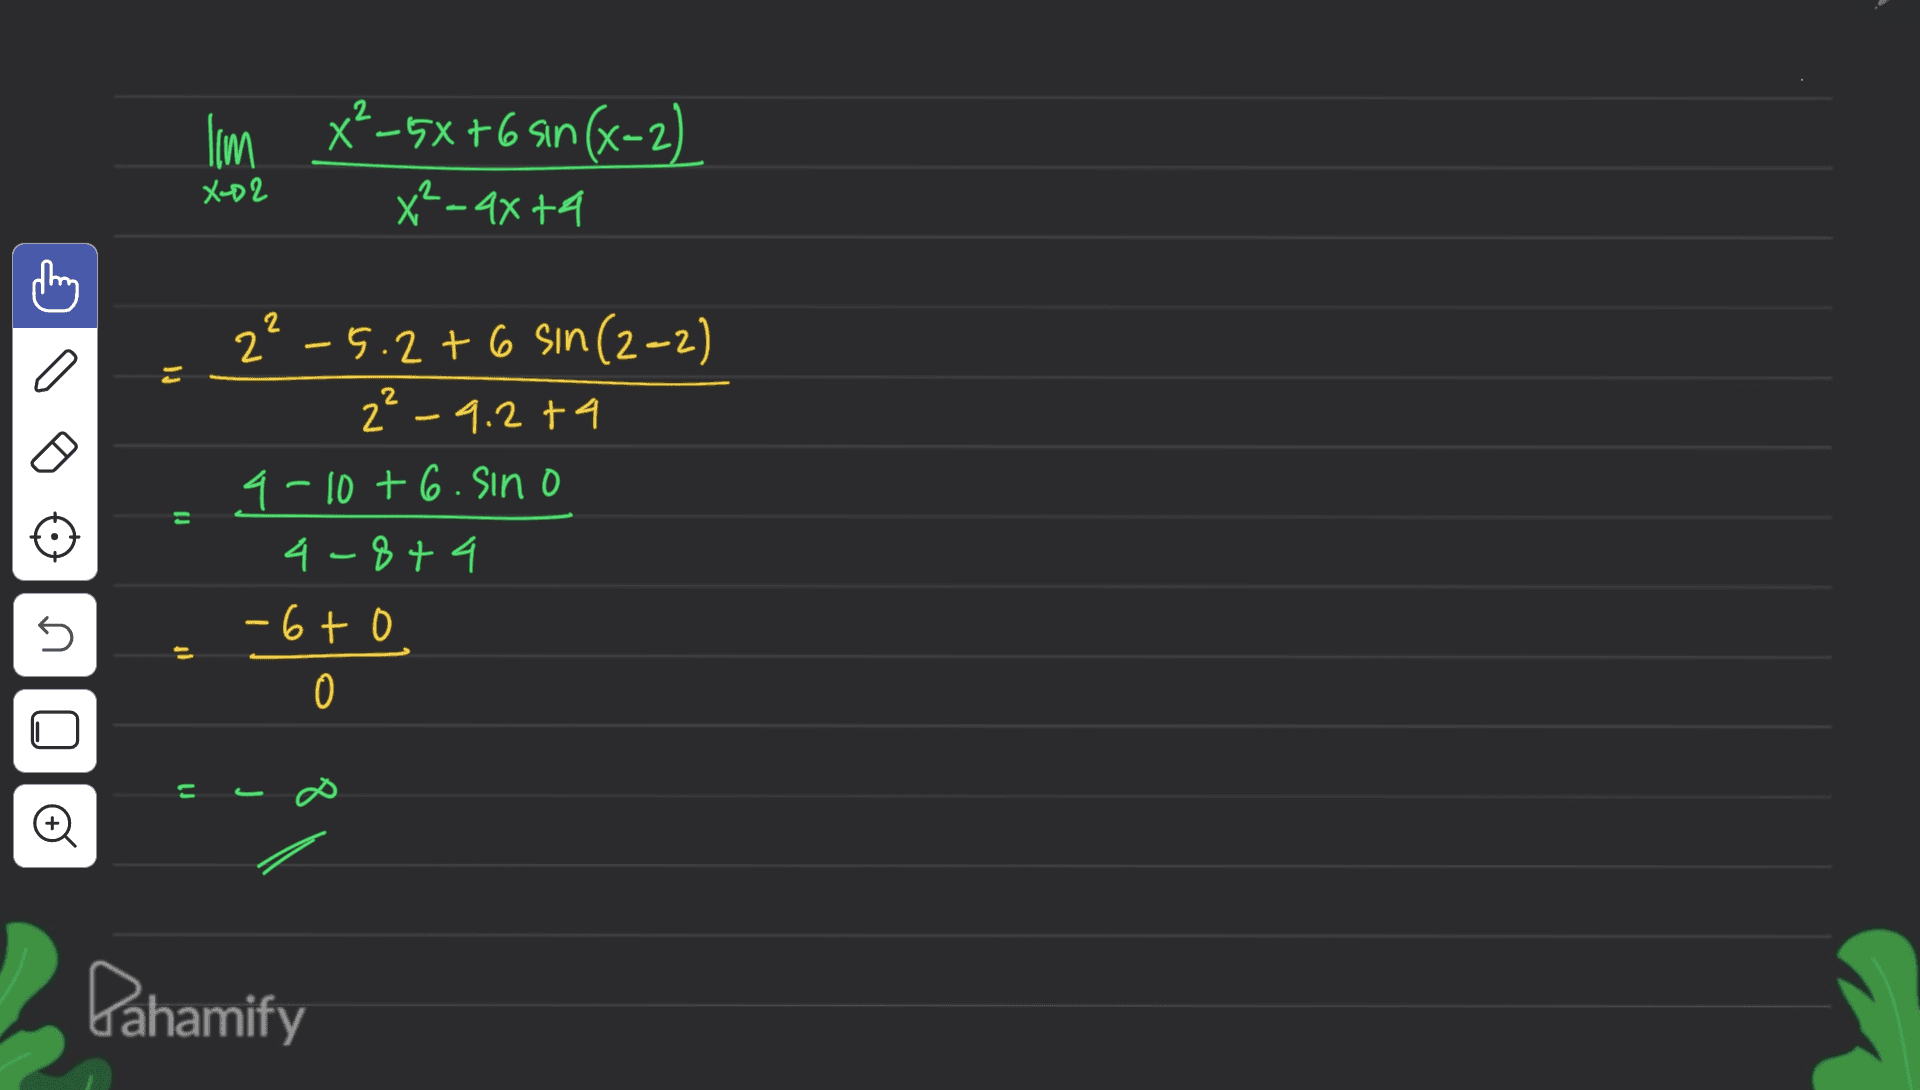 I'm *²-5X+6 sin(x-2) x²-axta X-D2 Ij - 2²-5.2+6 sin(2-2) 2²-9.2t4 9-10+ 6. Sino 4-844 -6to 0 5 j E o Dahamify 